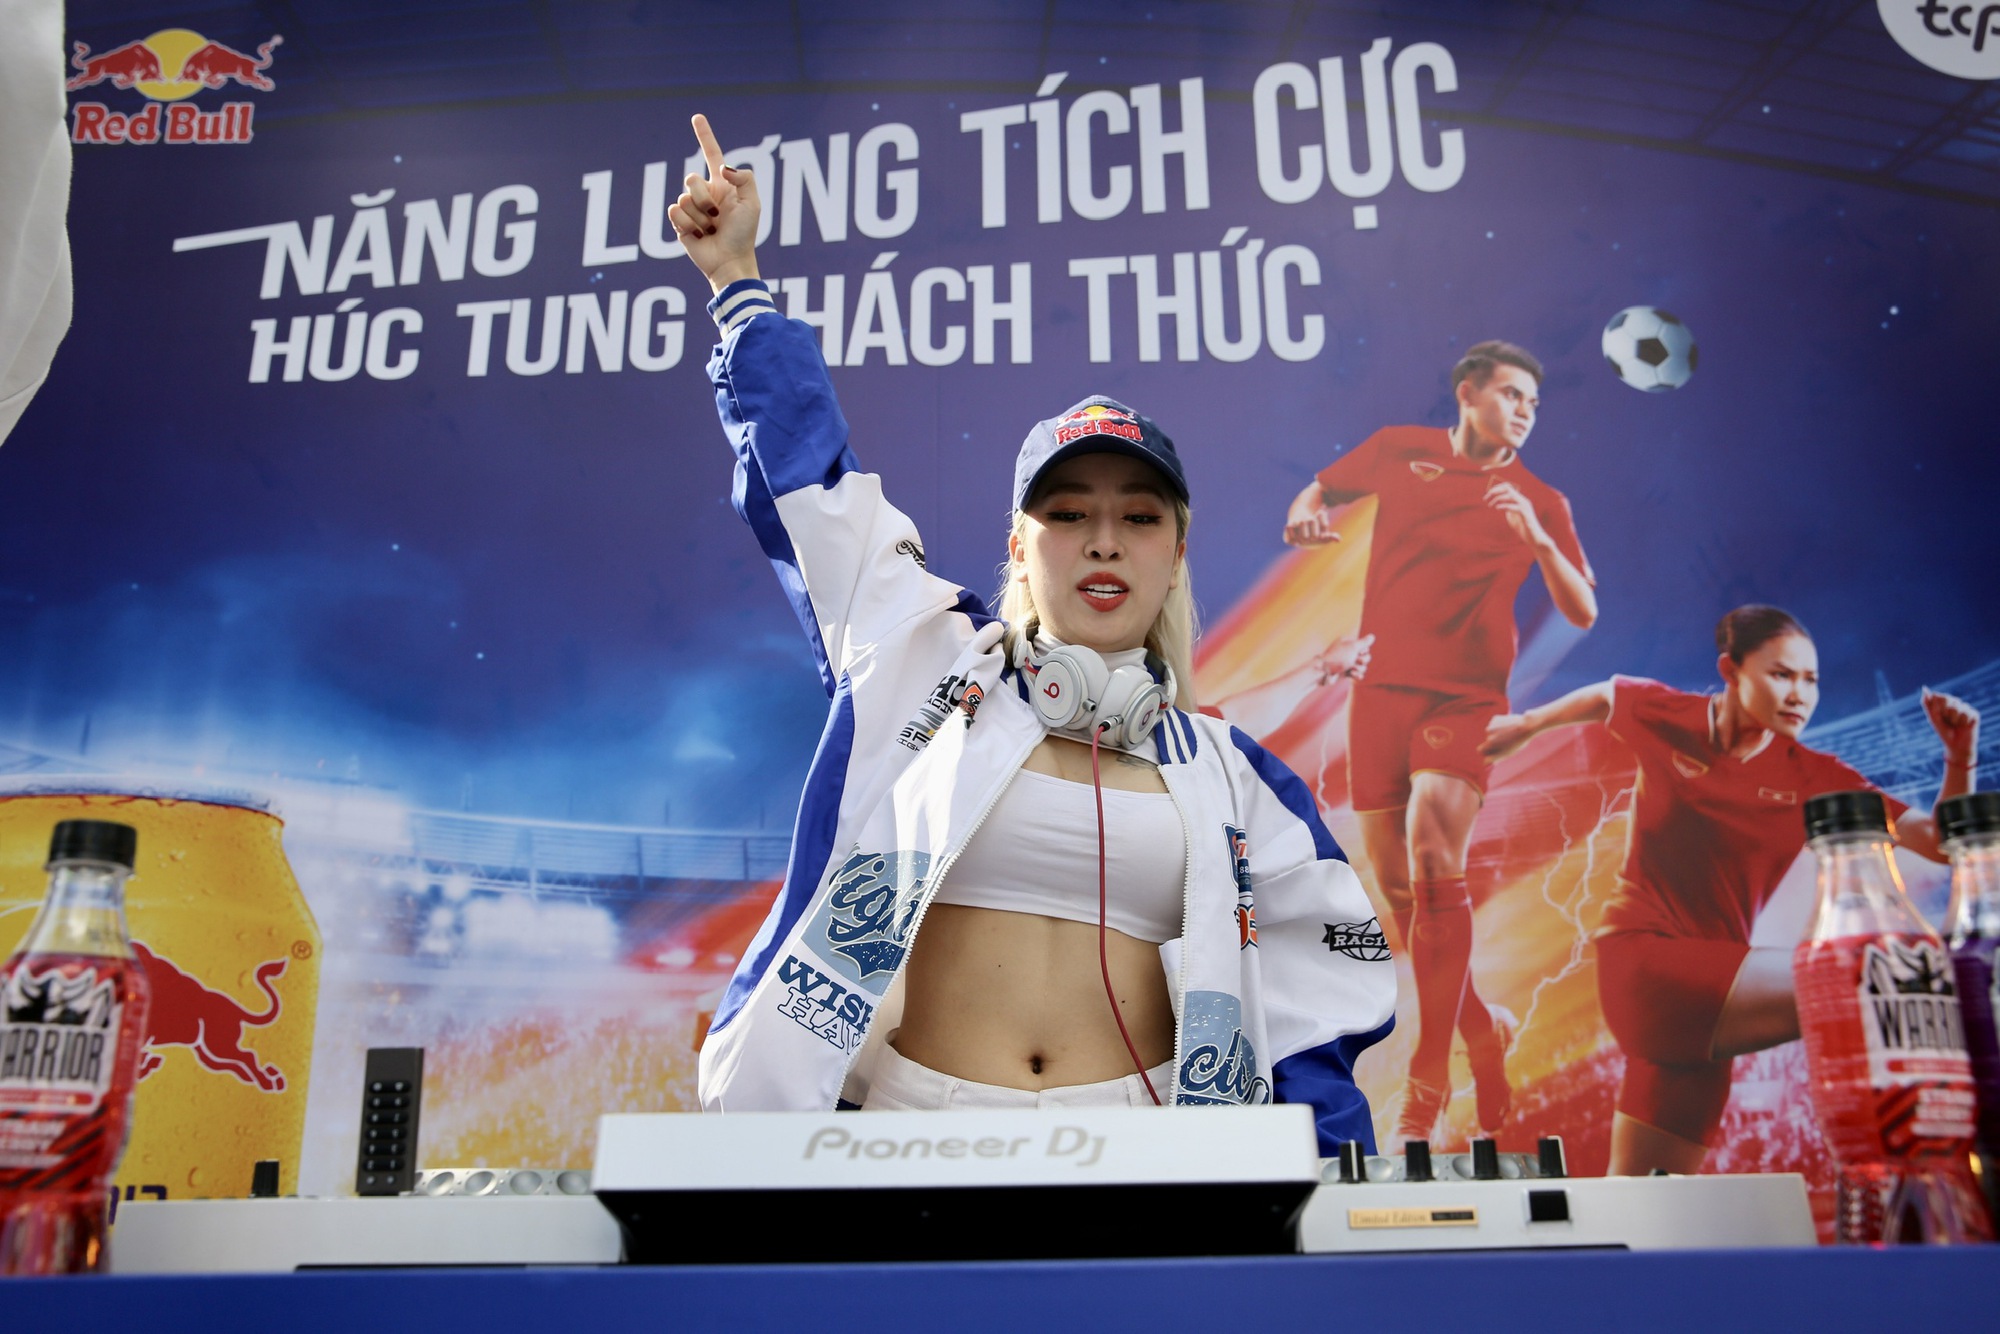 Red Bull Fanzone: Du khách nước ngoài hào hứng tiếp lửa U.22 Việt Nam - Ảnh 3.